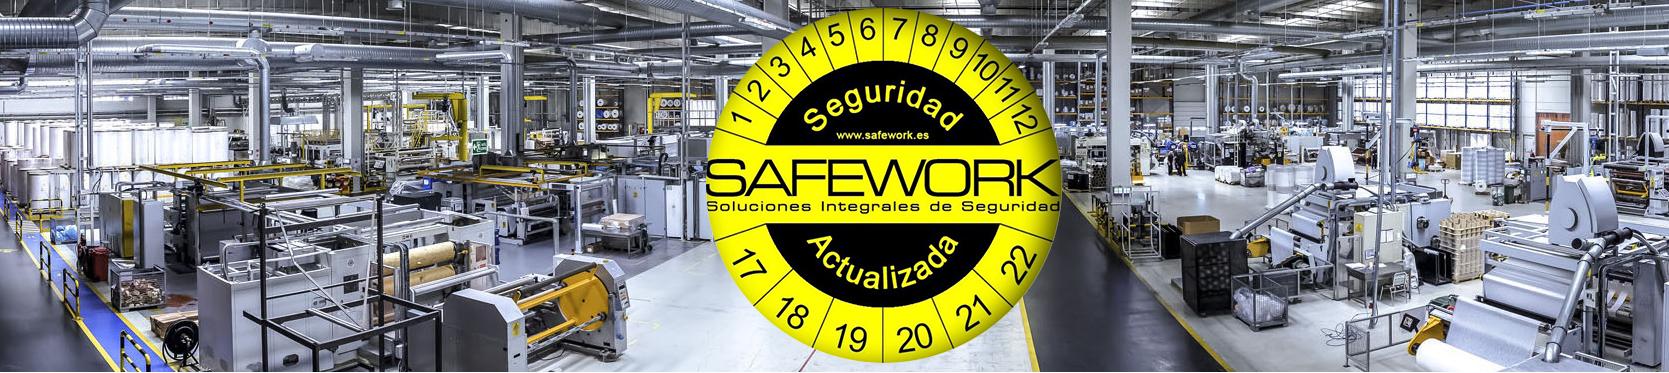 Safework, seguridad actualizada panorama logo